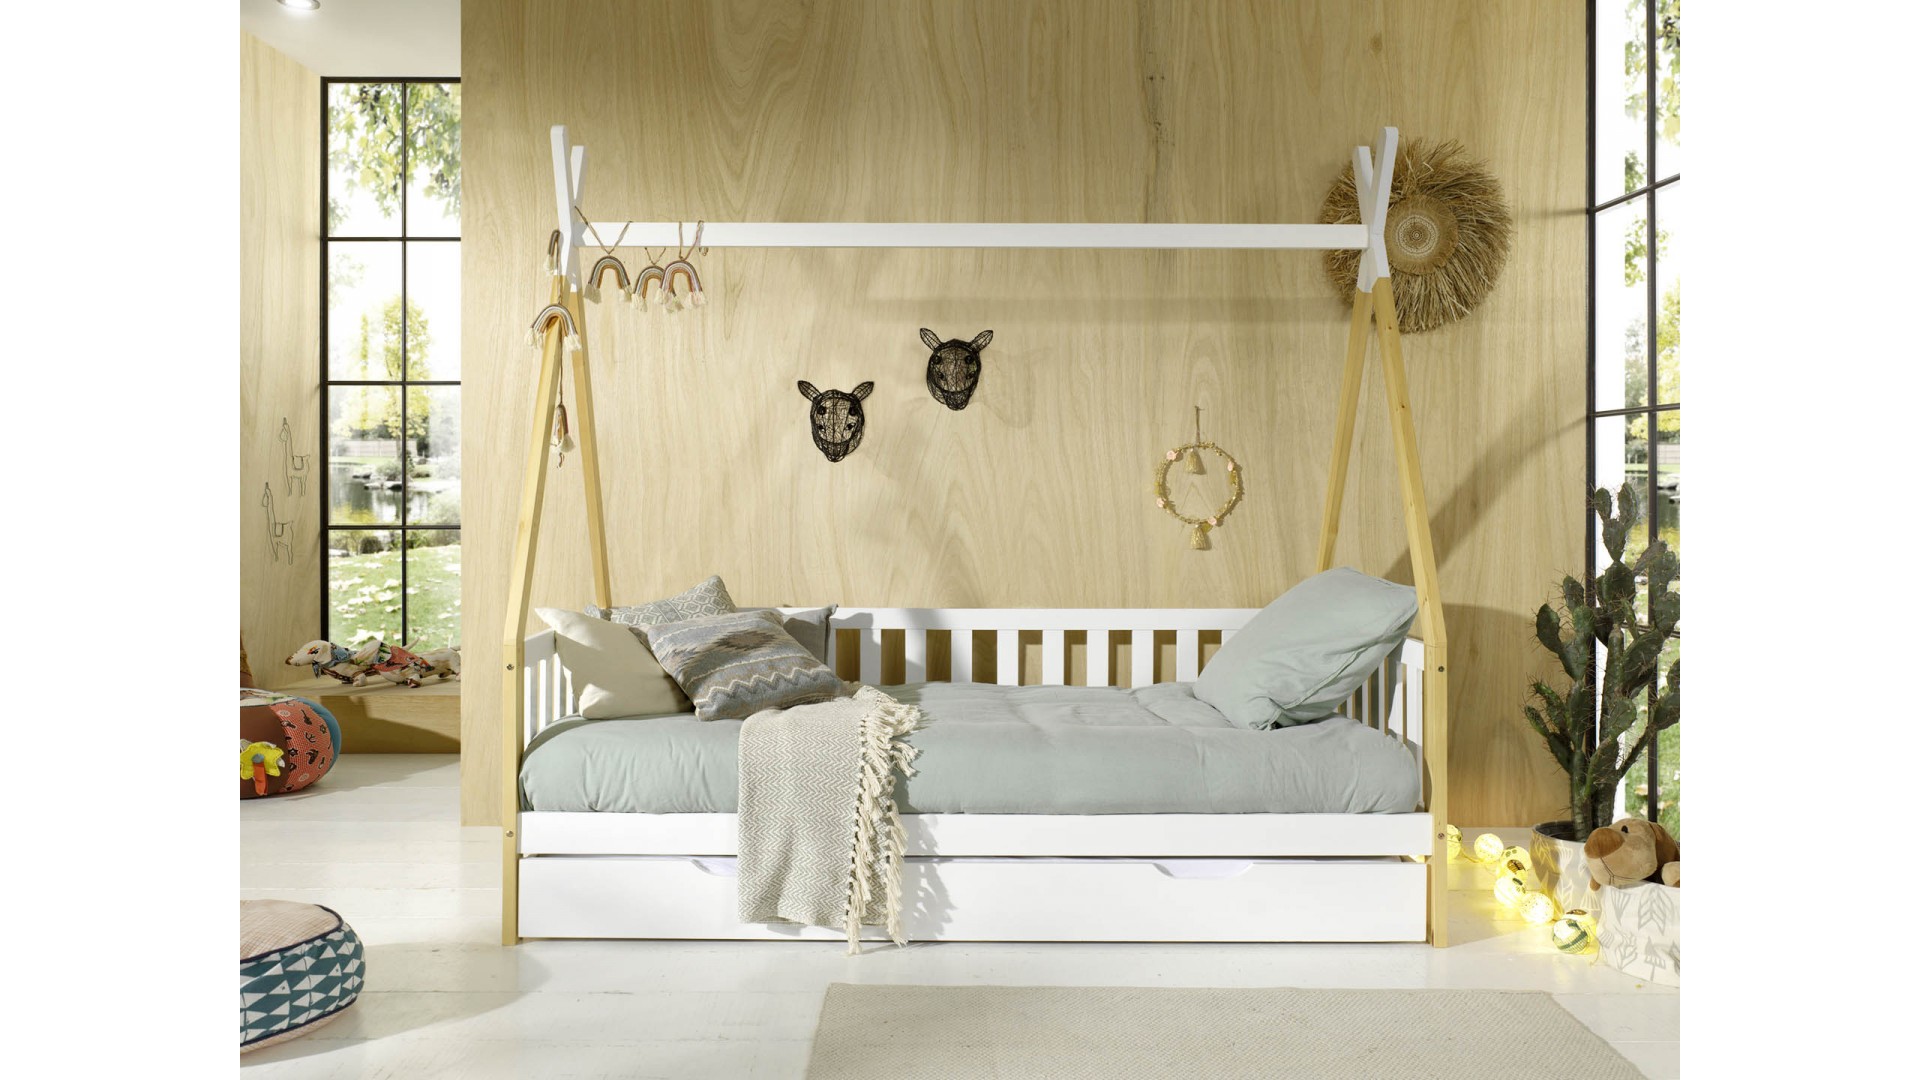 Lit enfant lit cabane 90 x 200 cm lit en bois pour chambre d'enfant avec